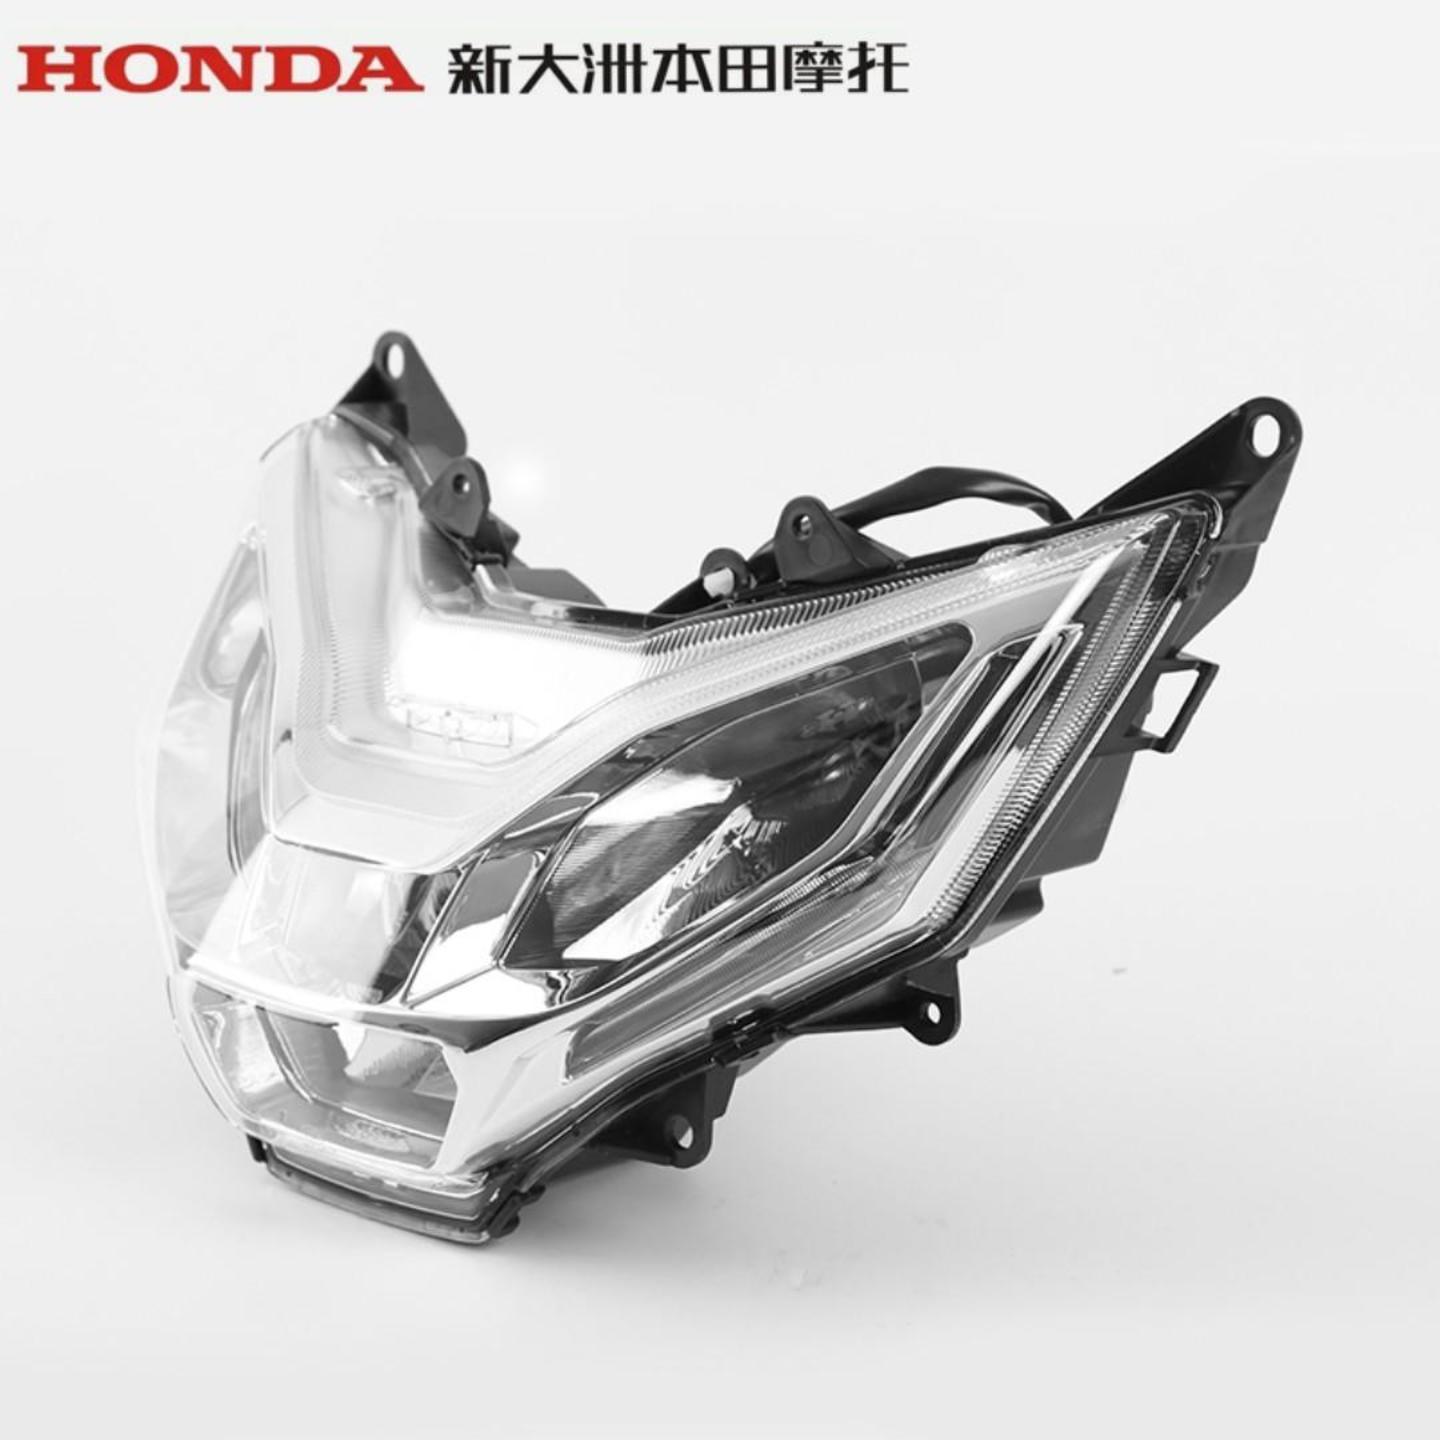 Honda CBF190X headight headlamp head light lamp